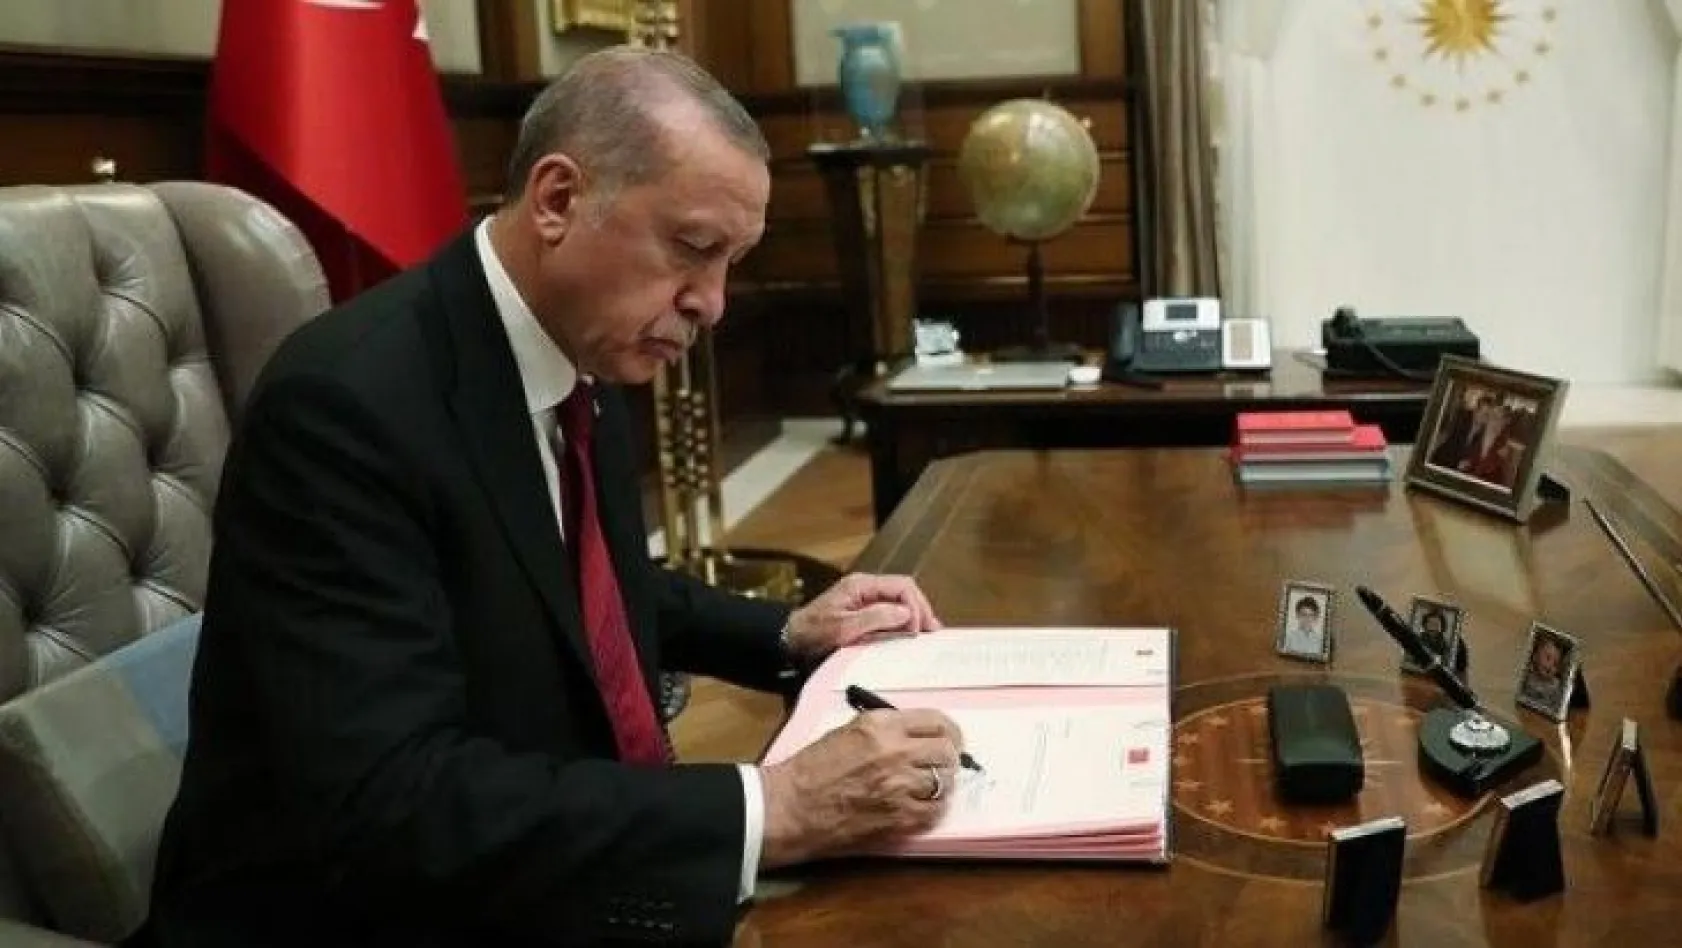 Cumhurbaşkanı Erdoğan'a sunulan reform paketinde kritik başlıklar yer alıyor